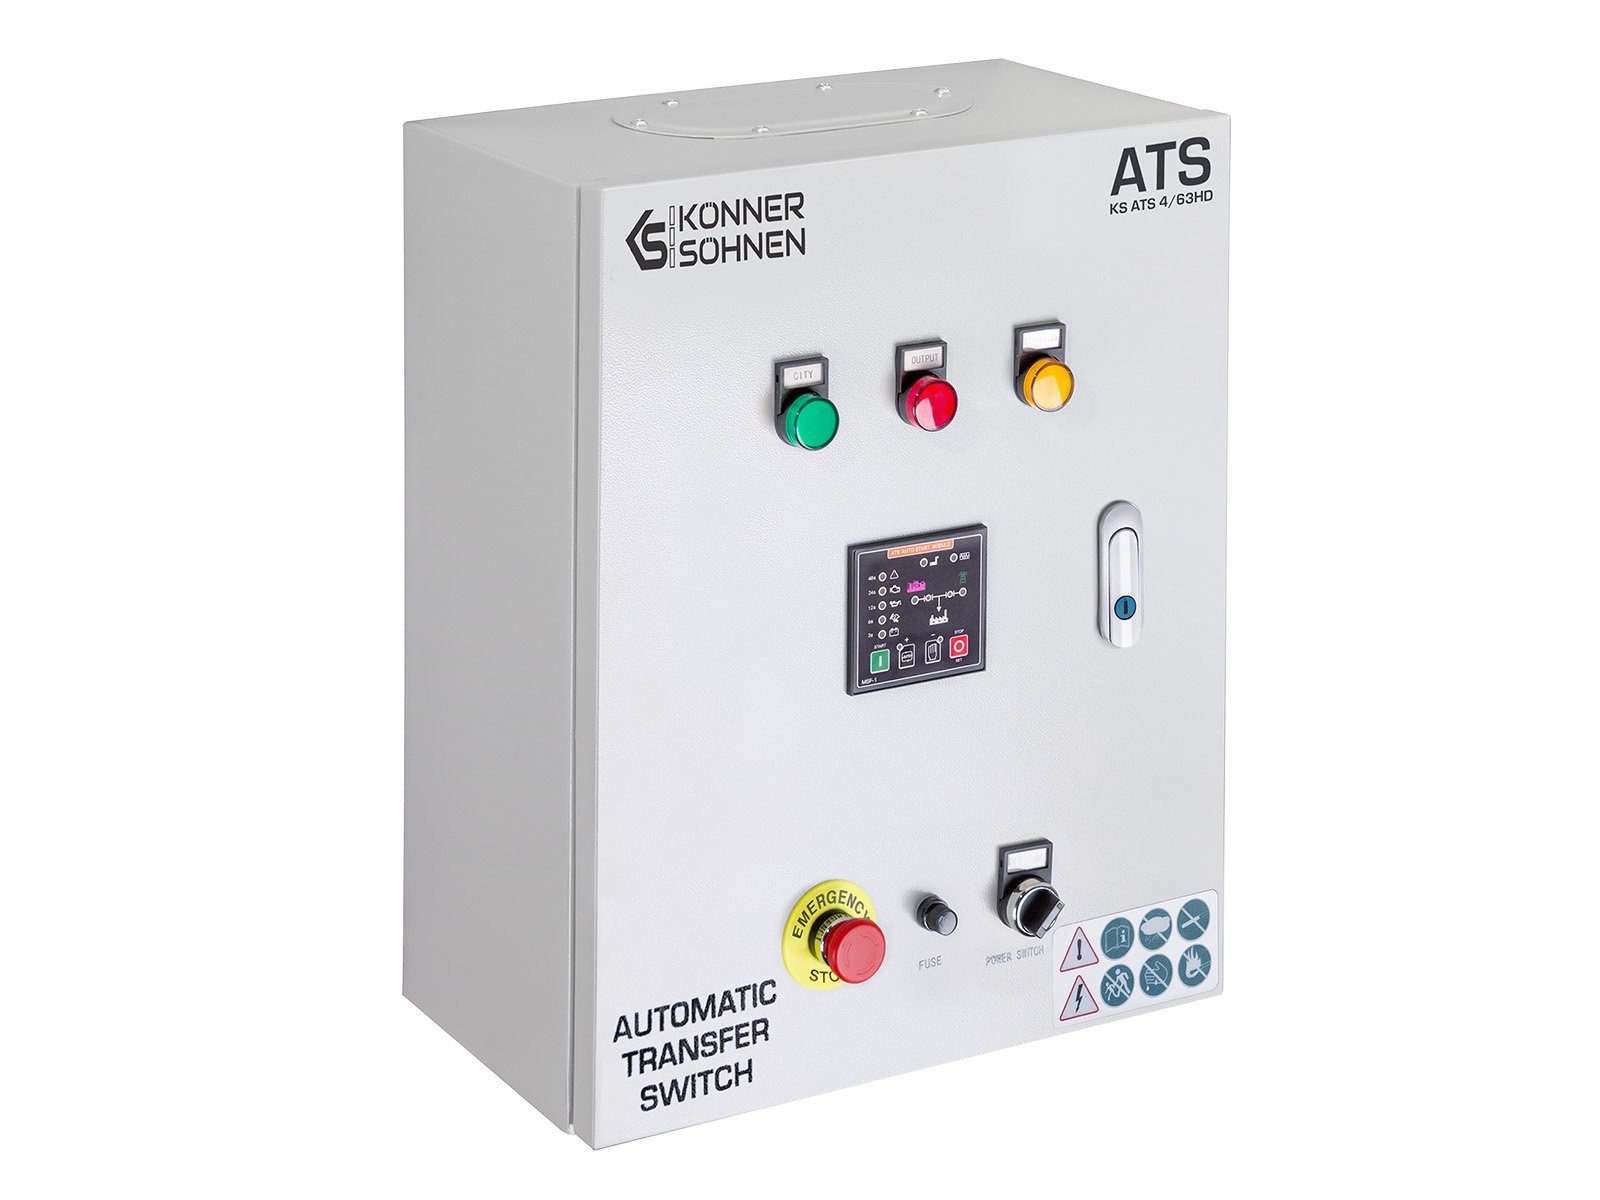 Könner & Diesel-Generatoren, Stromerzeuger mit „Könner des automatisches und für & (für 4/63HD, und für KS Stoppen Starten 230V- 3-Phasen), Generators 1-Phasen 1-tlg., Söhnen“ ATS Söhnen ATS-Anschluss